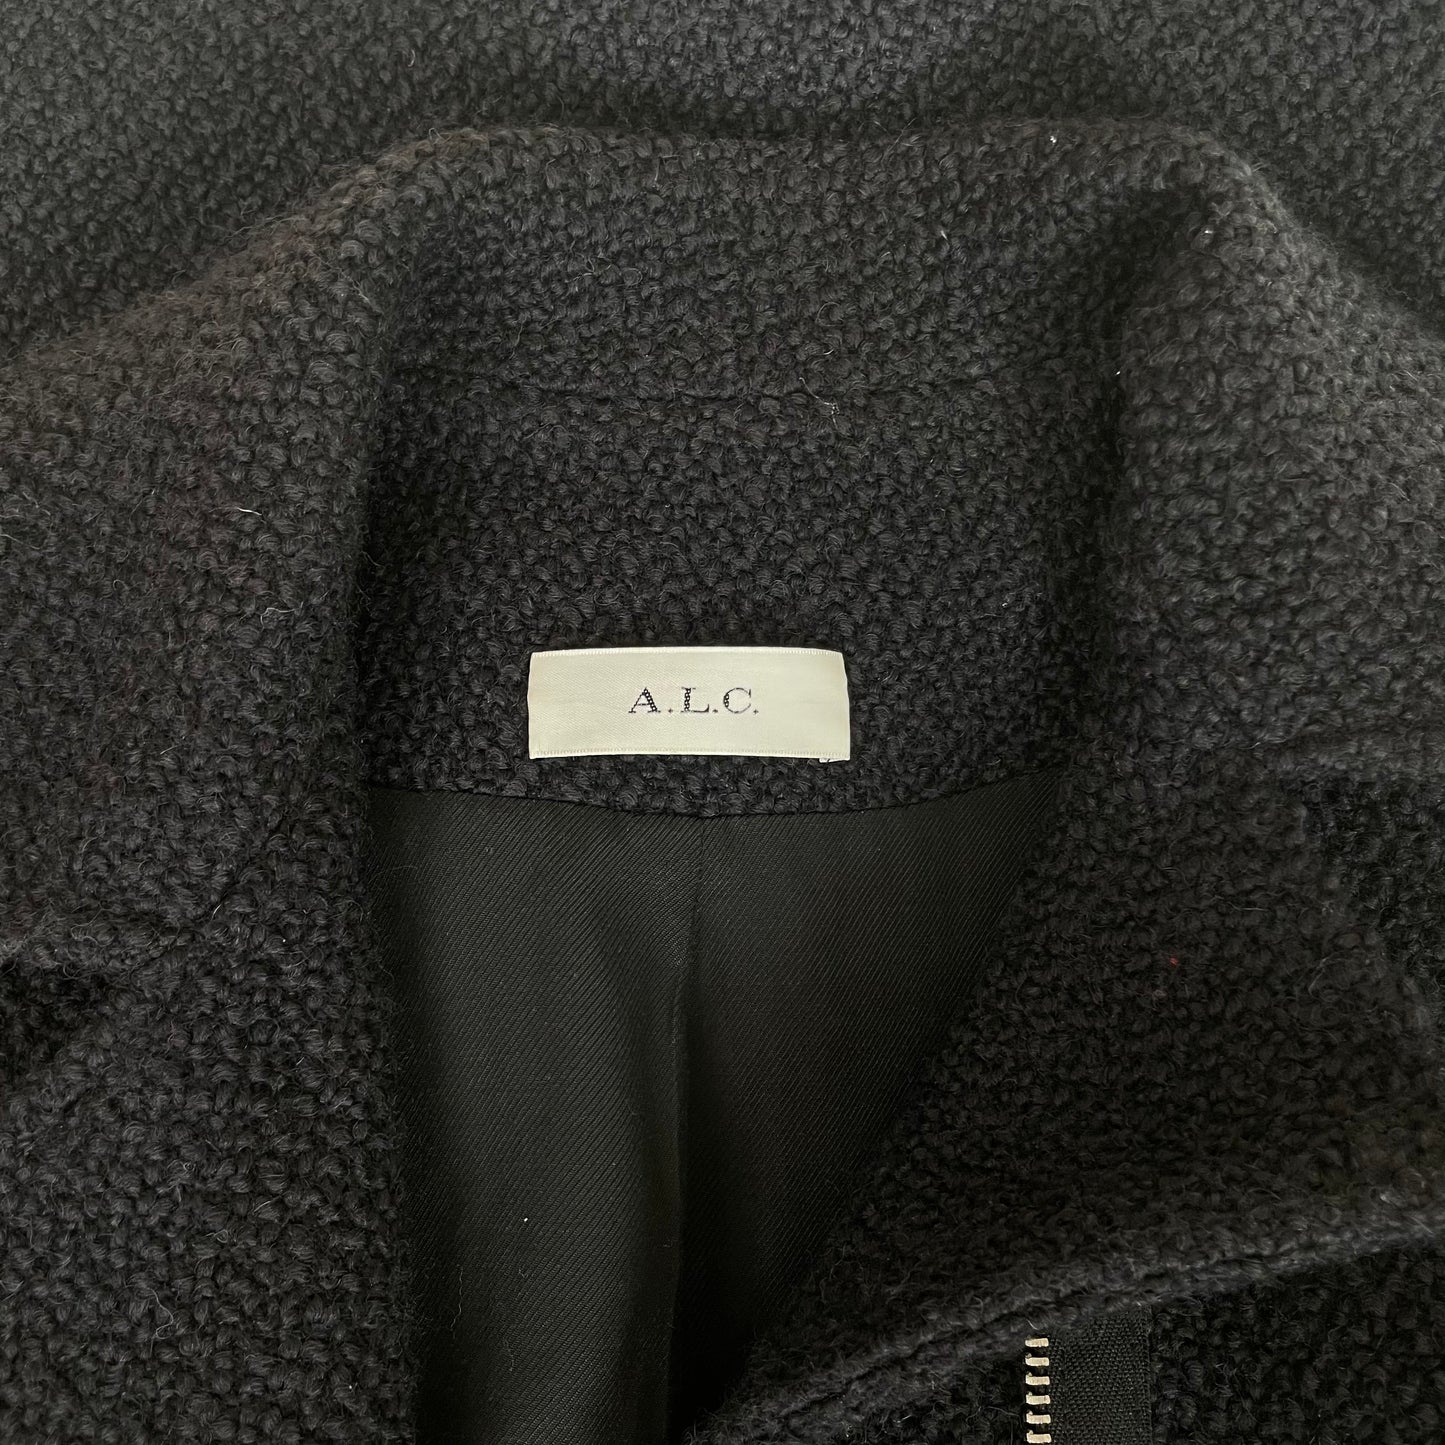 Black Tweed Coat - L